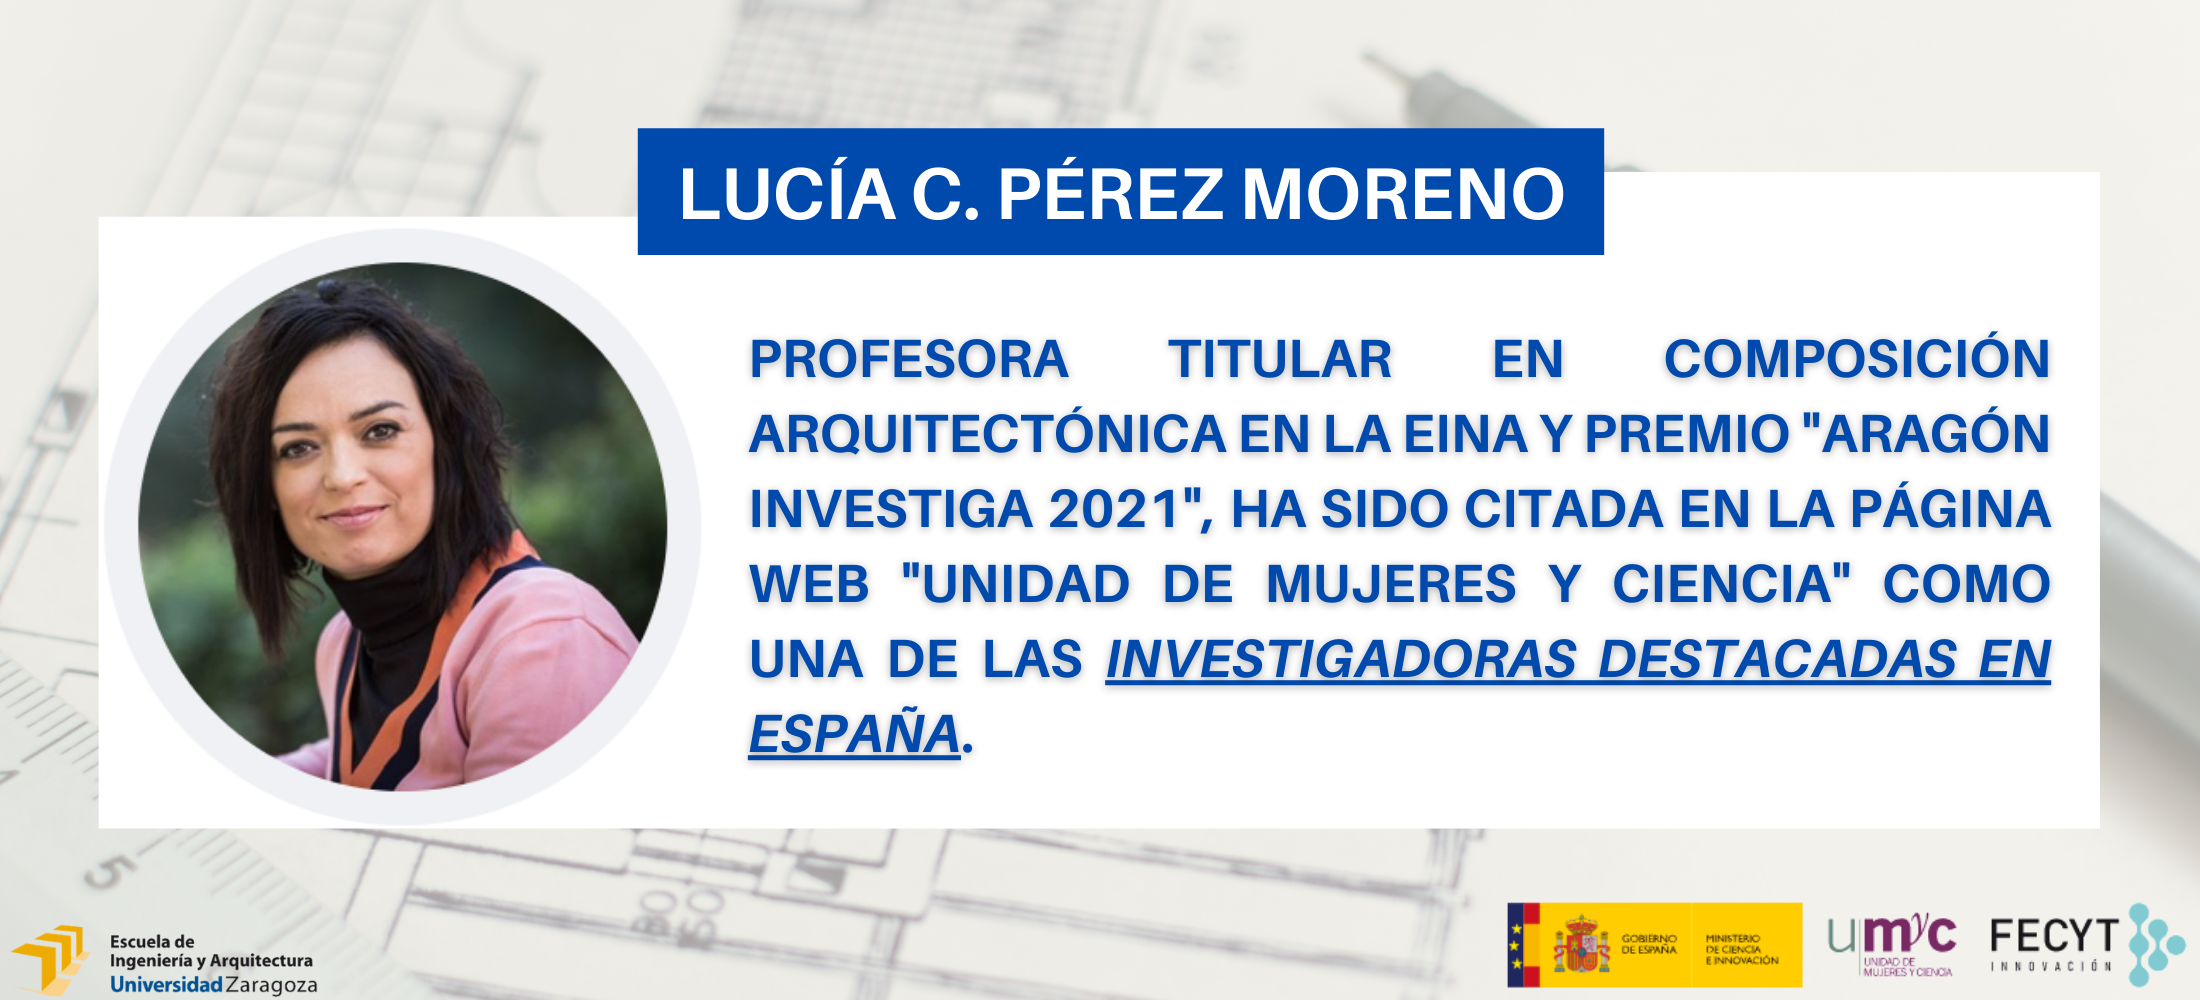 Lucía C. Pérez Moreno investigadora destacada España